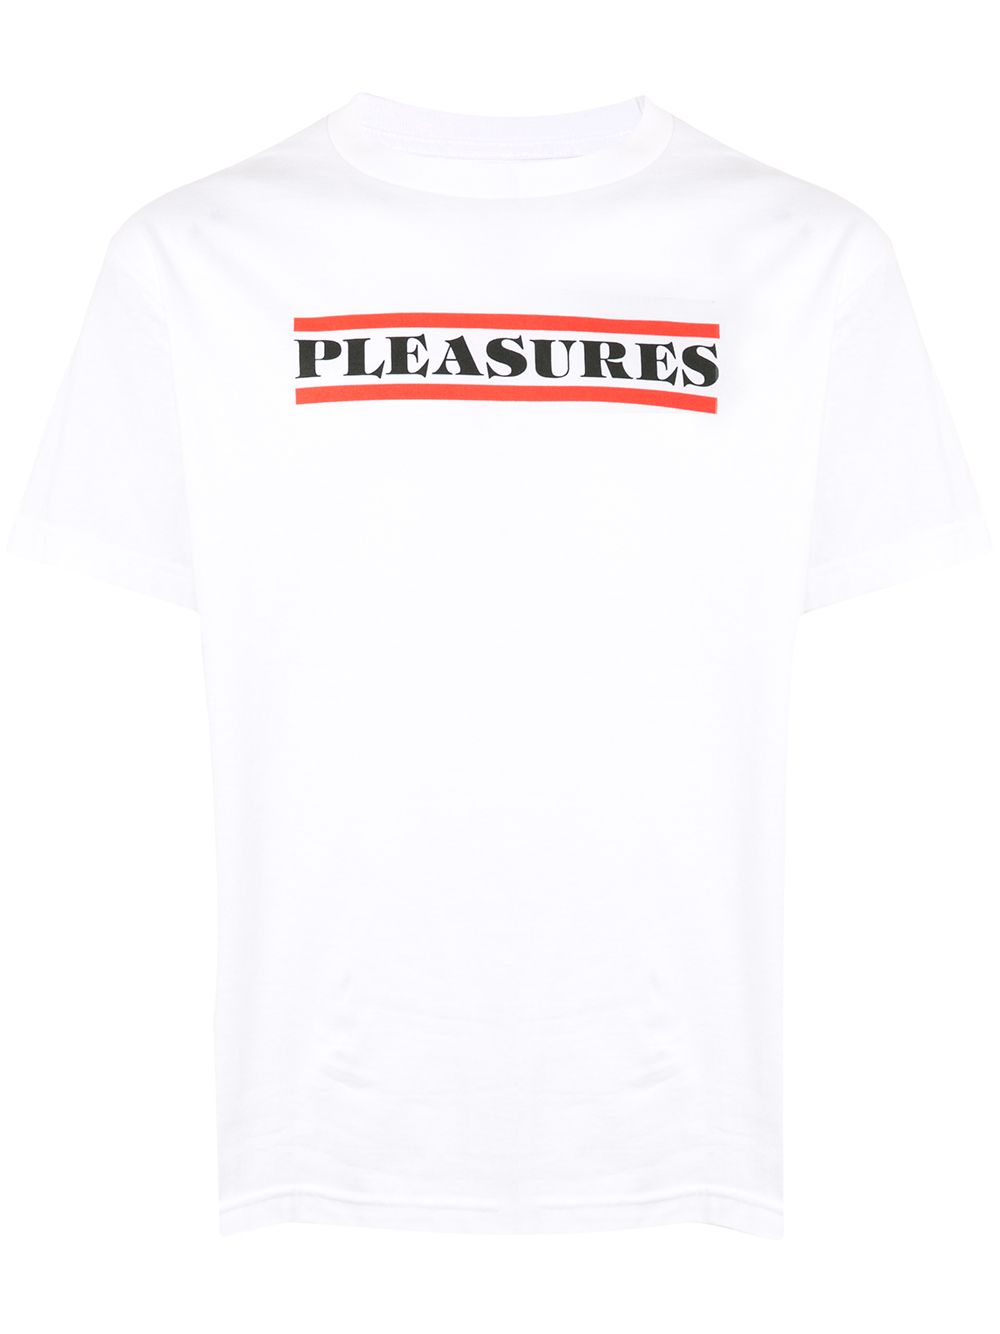 фото Pleasures футболка surrender с логотипом